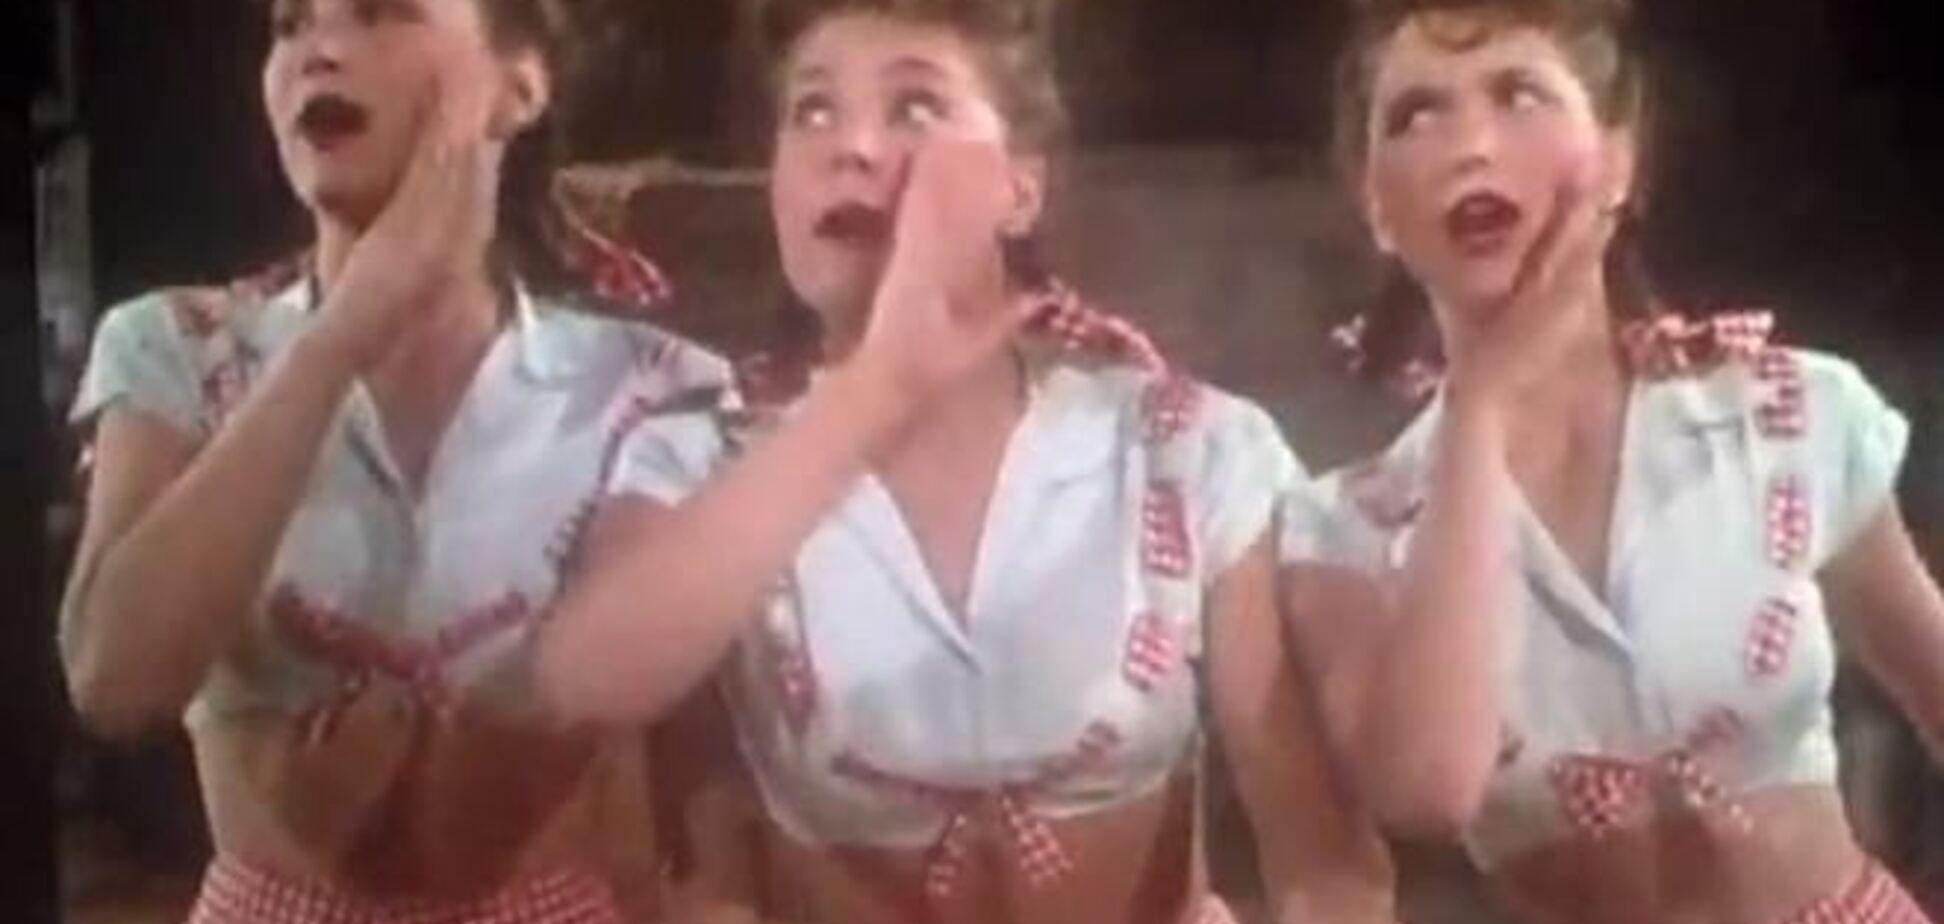 Интернет взорвало видео поющих балерин 1944 года